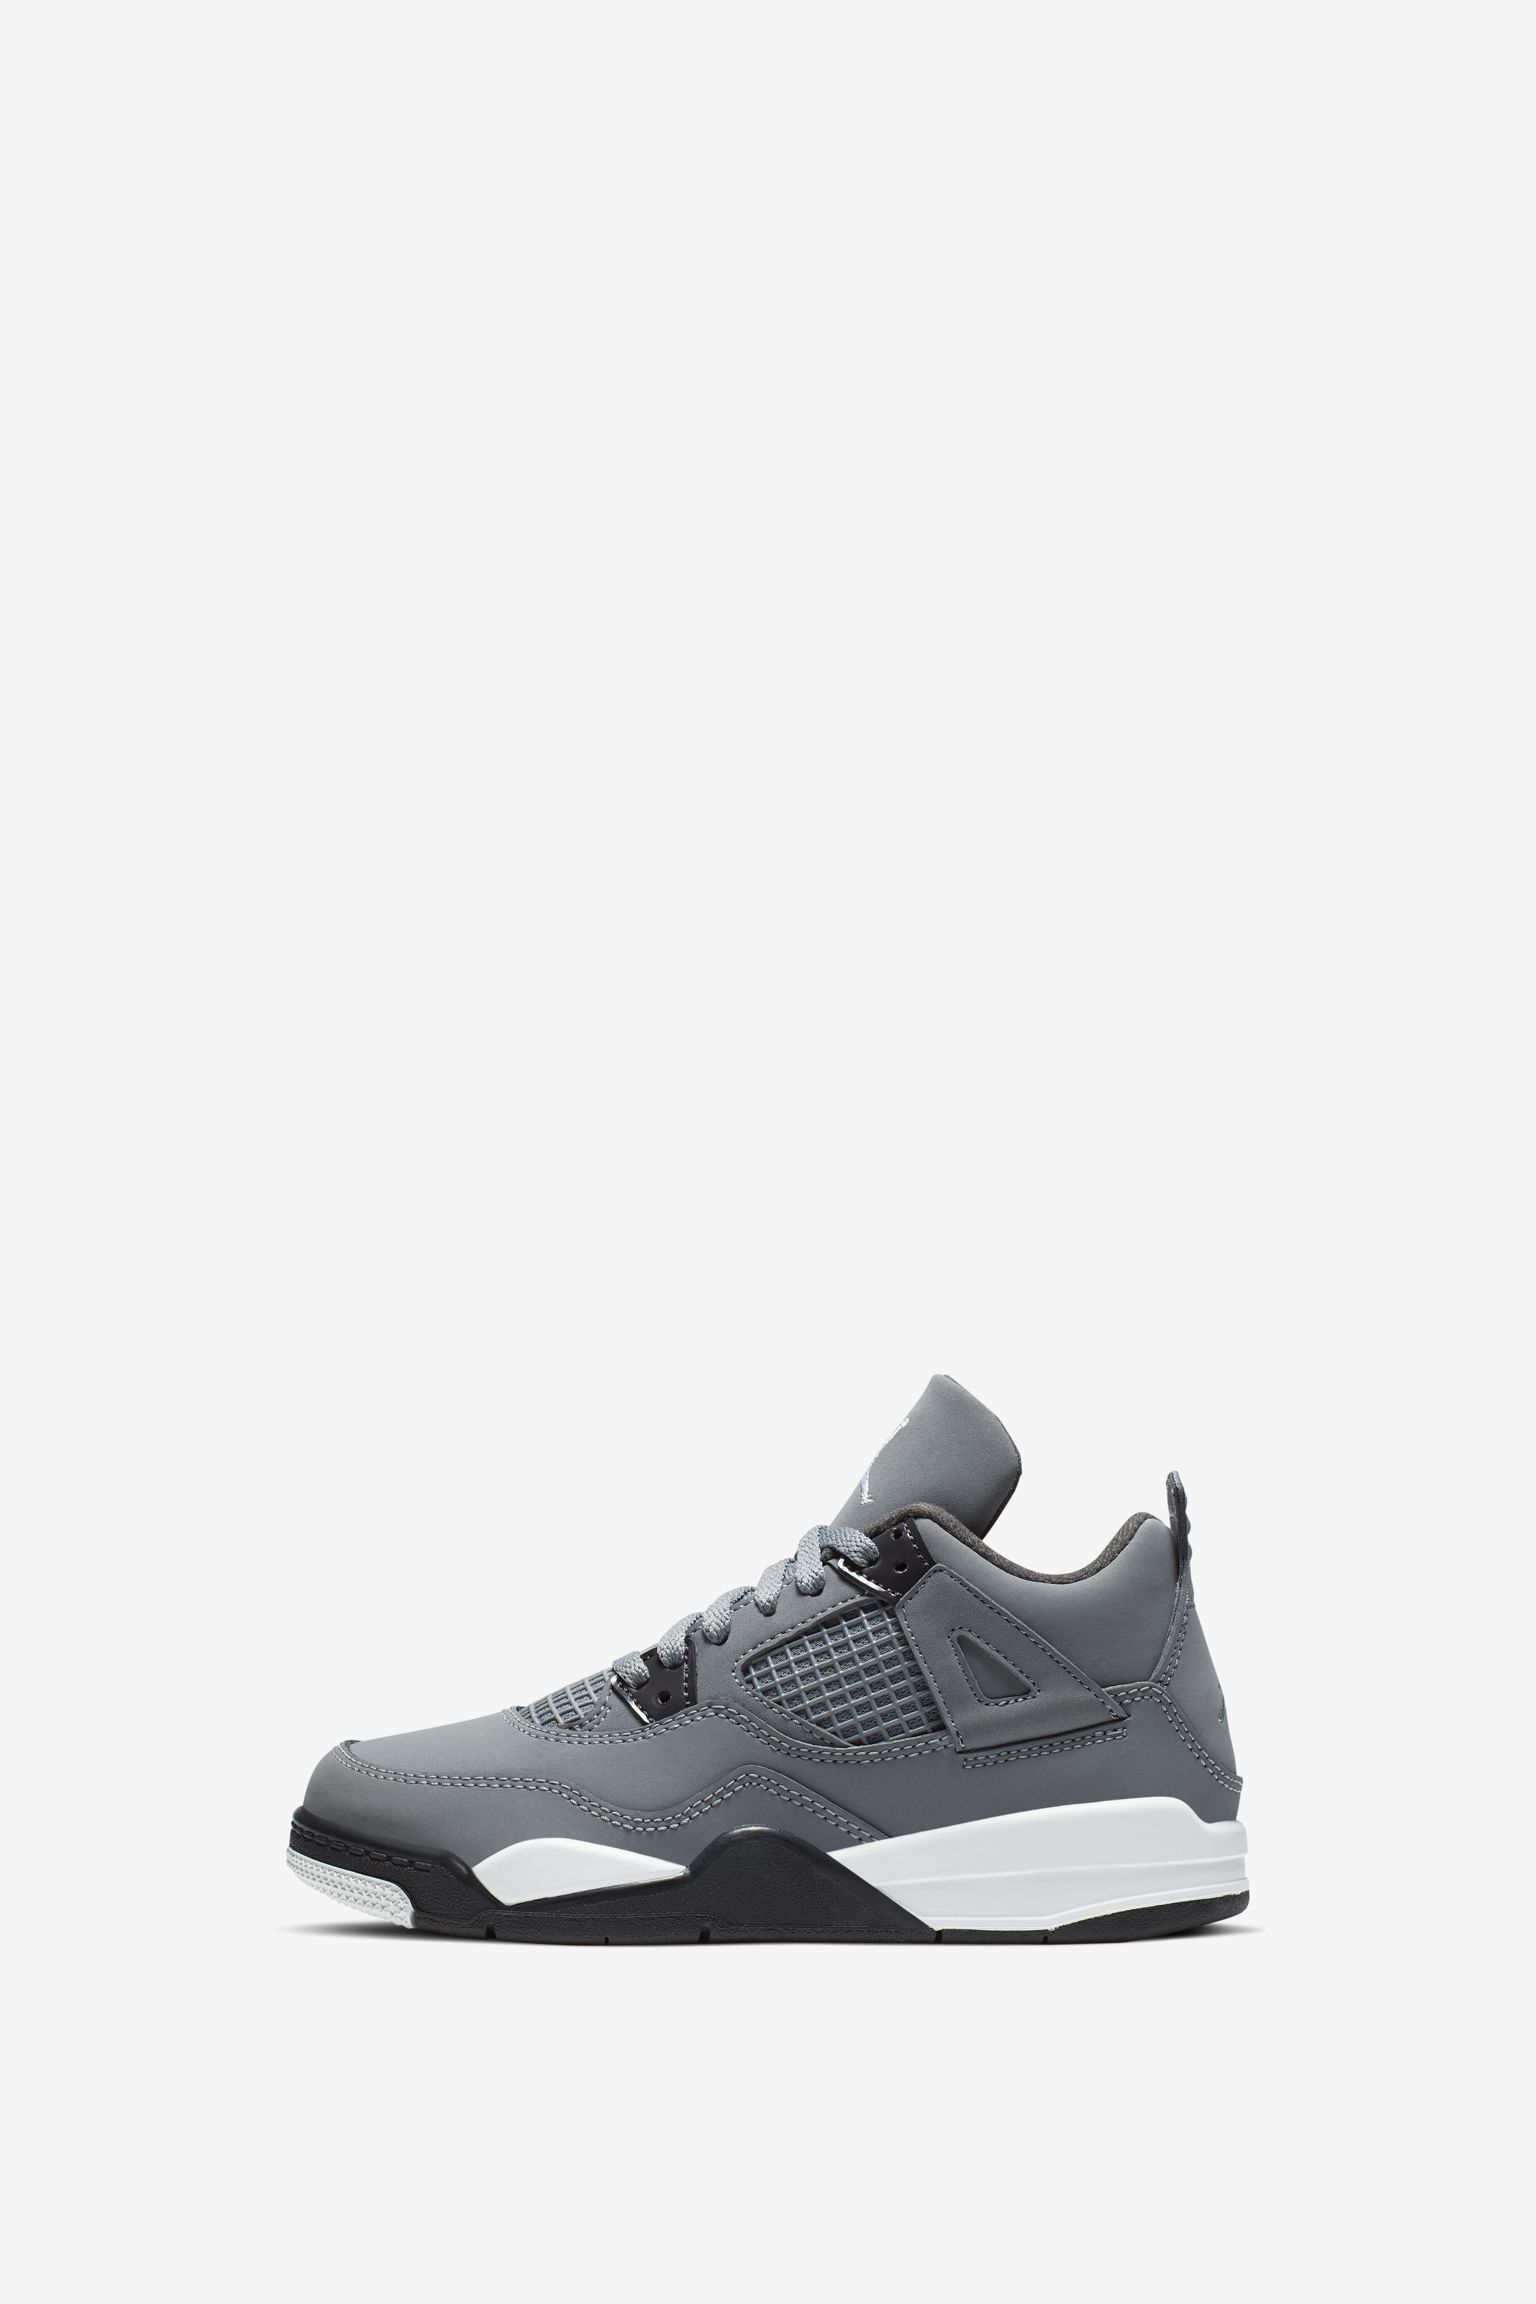 NIKE Air Jordan 4 cool grey